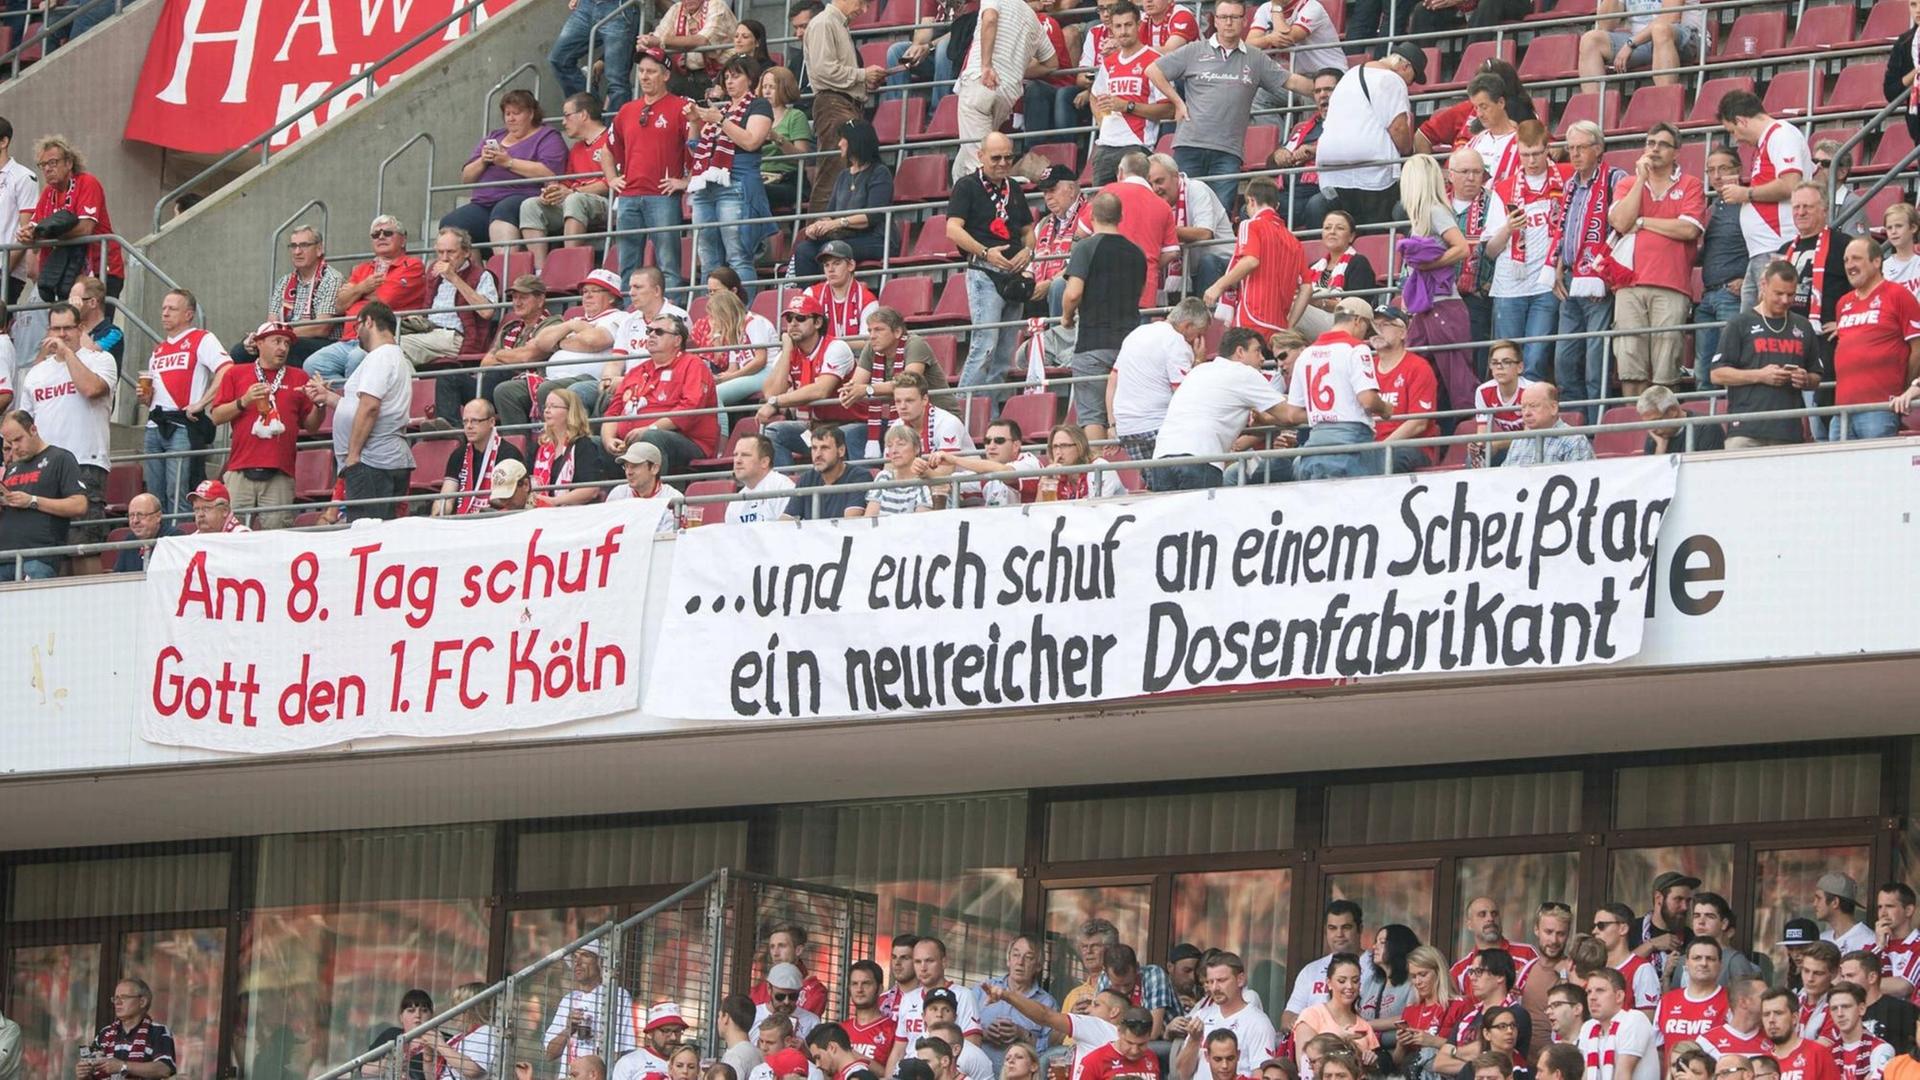 Protestplakat gegen RB Leipzig beim Fußball-Bundesligaspiel zwischen dem 1. FC Köln und Leipzig am 25.09.2016 in Köln.